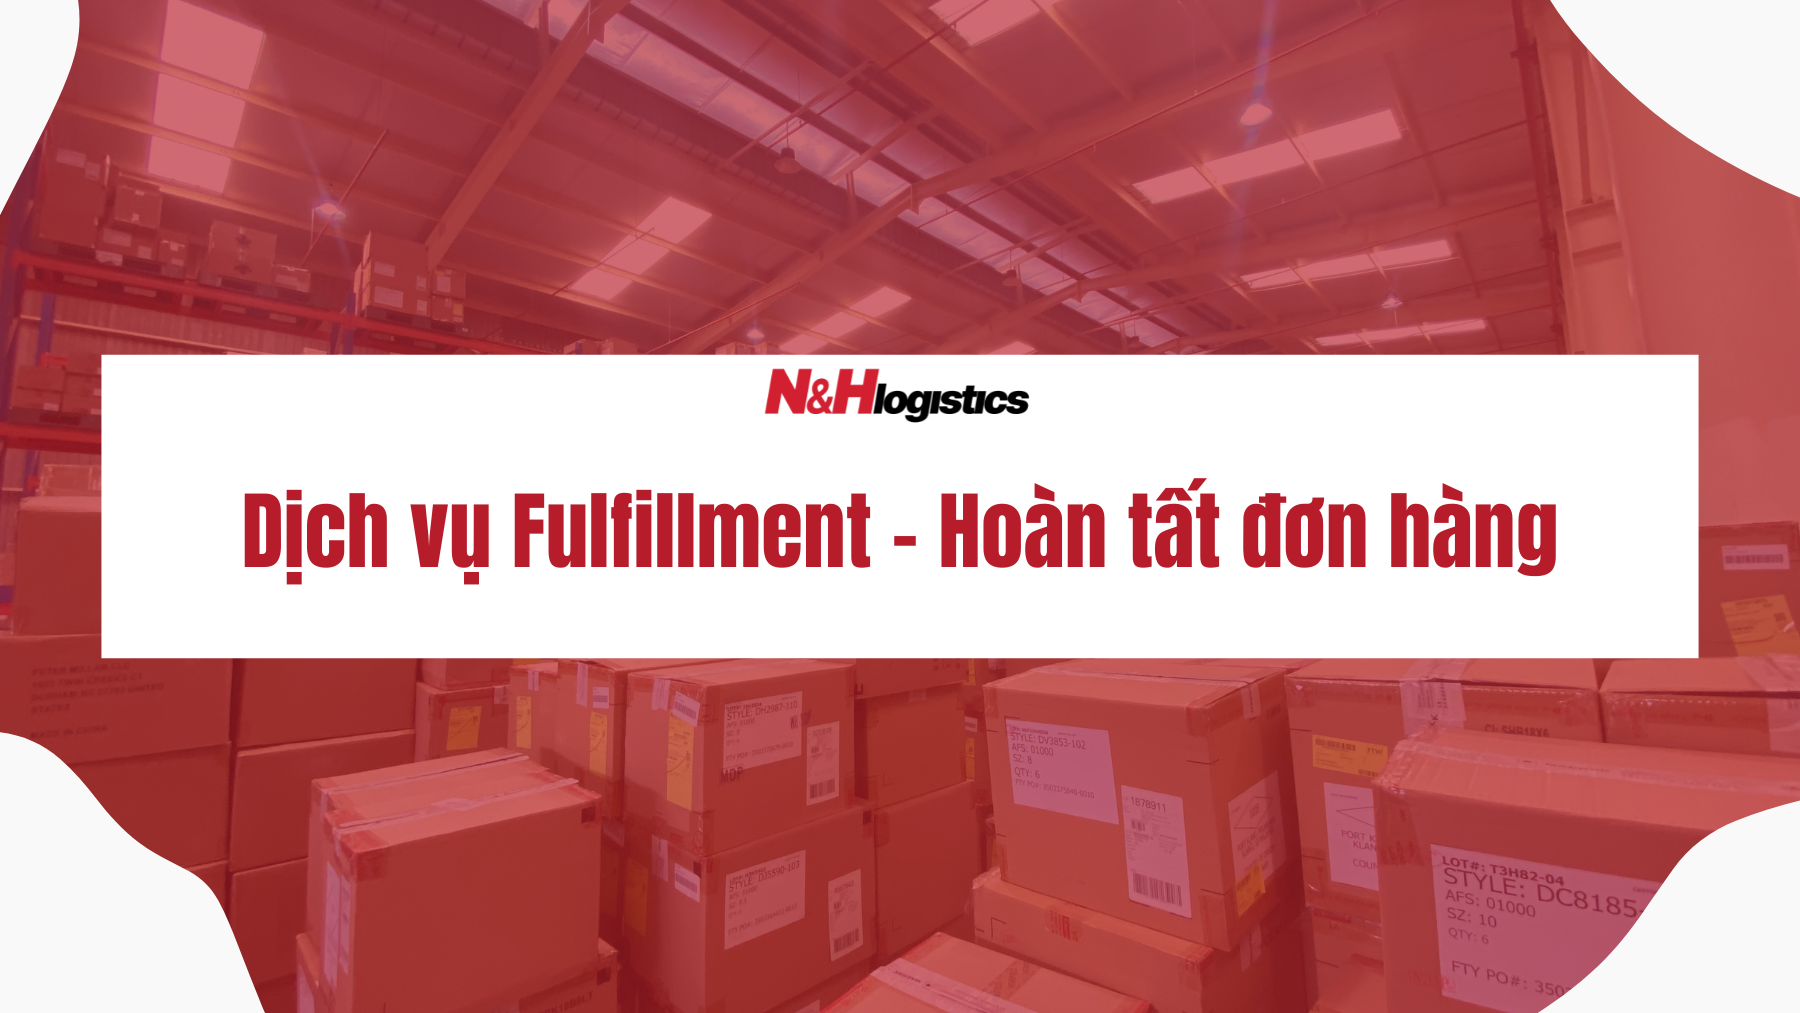 Dịch vụ fulfillment của N&H Logistics